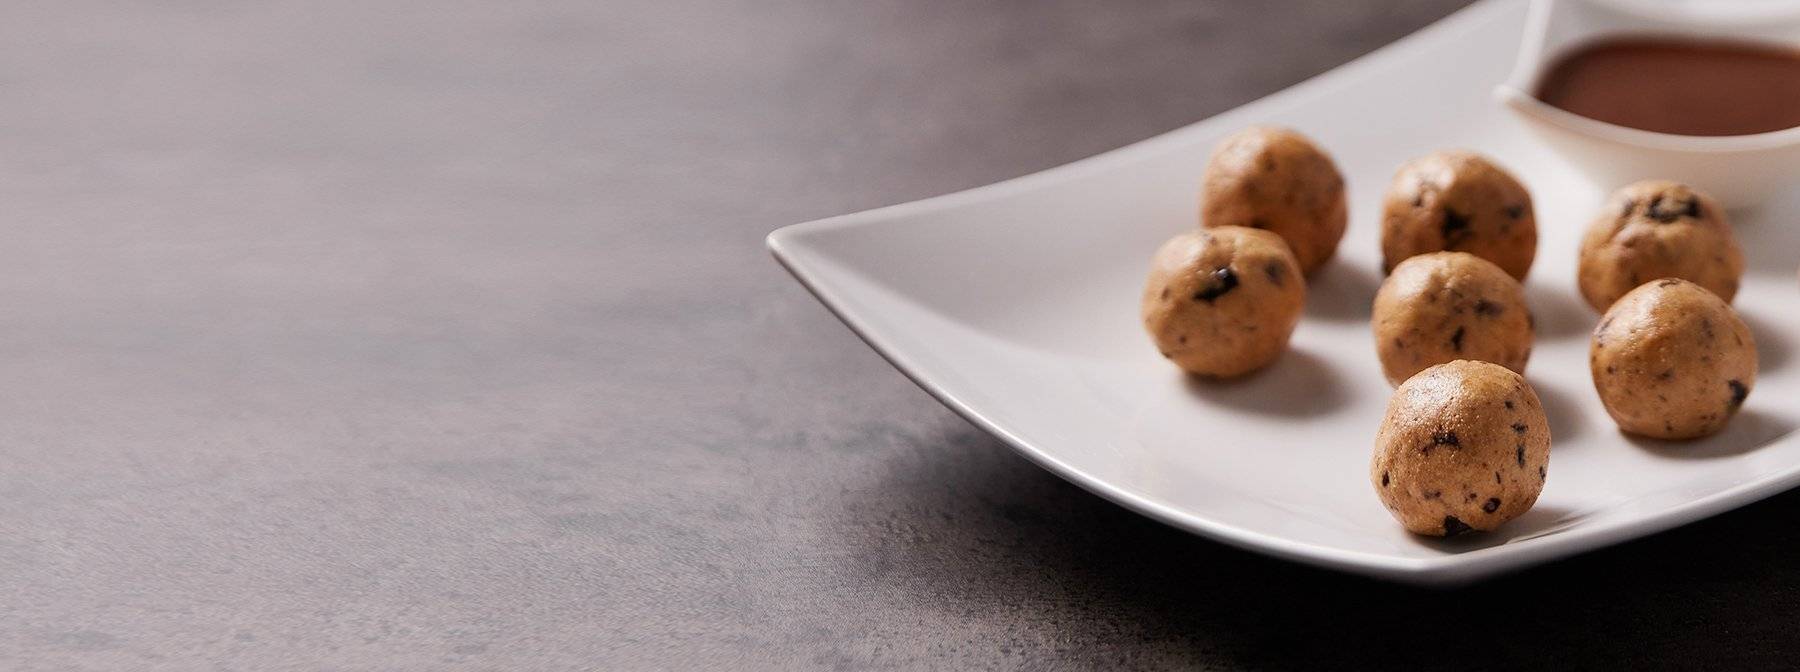 Peanut Butter Cookie Dough Bites | Gesunde, proteinreiche Snacks